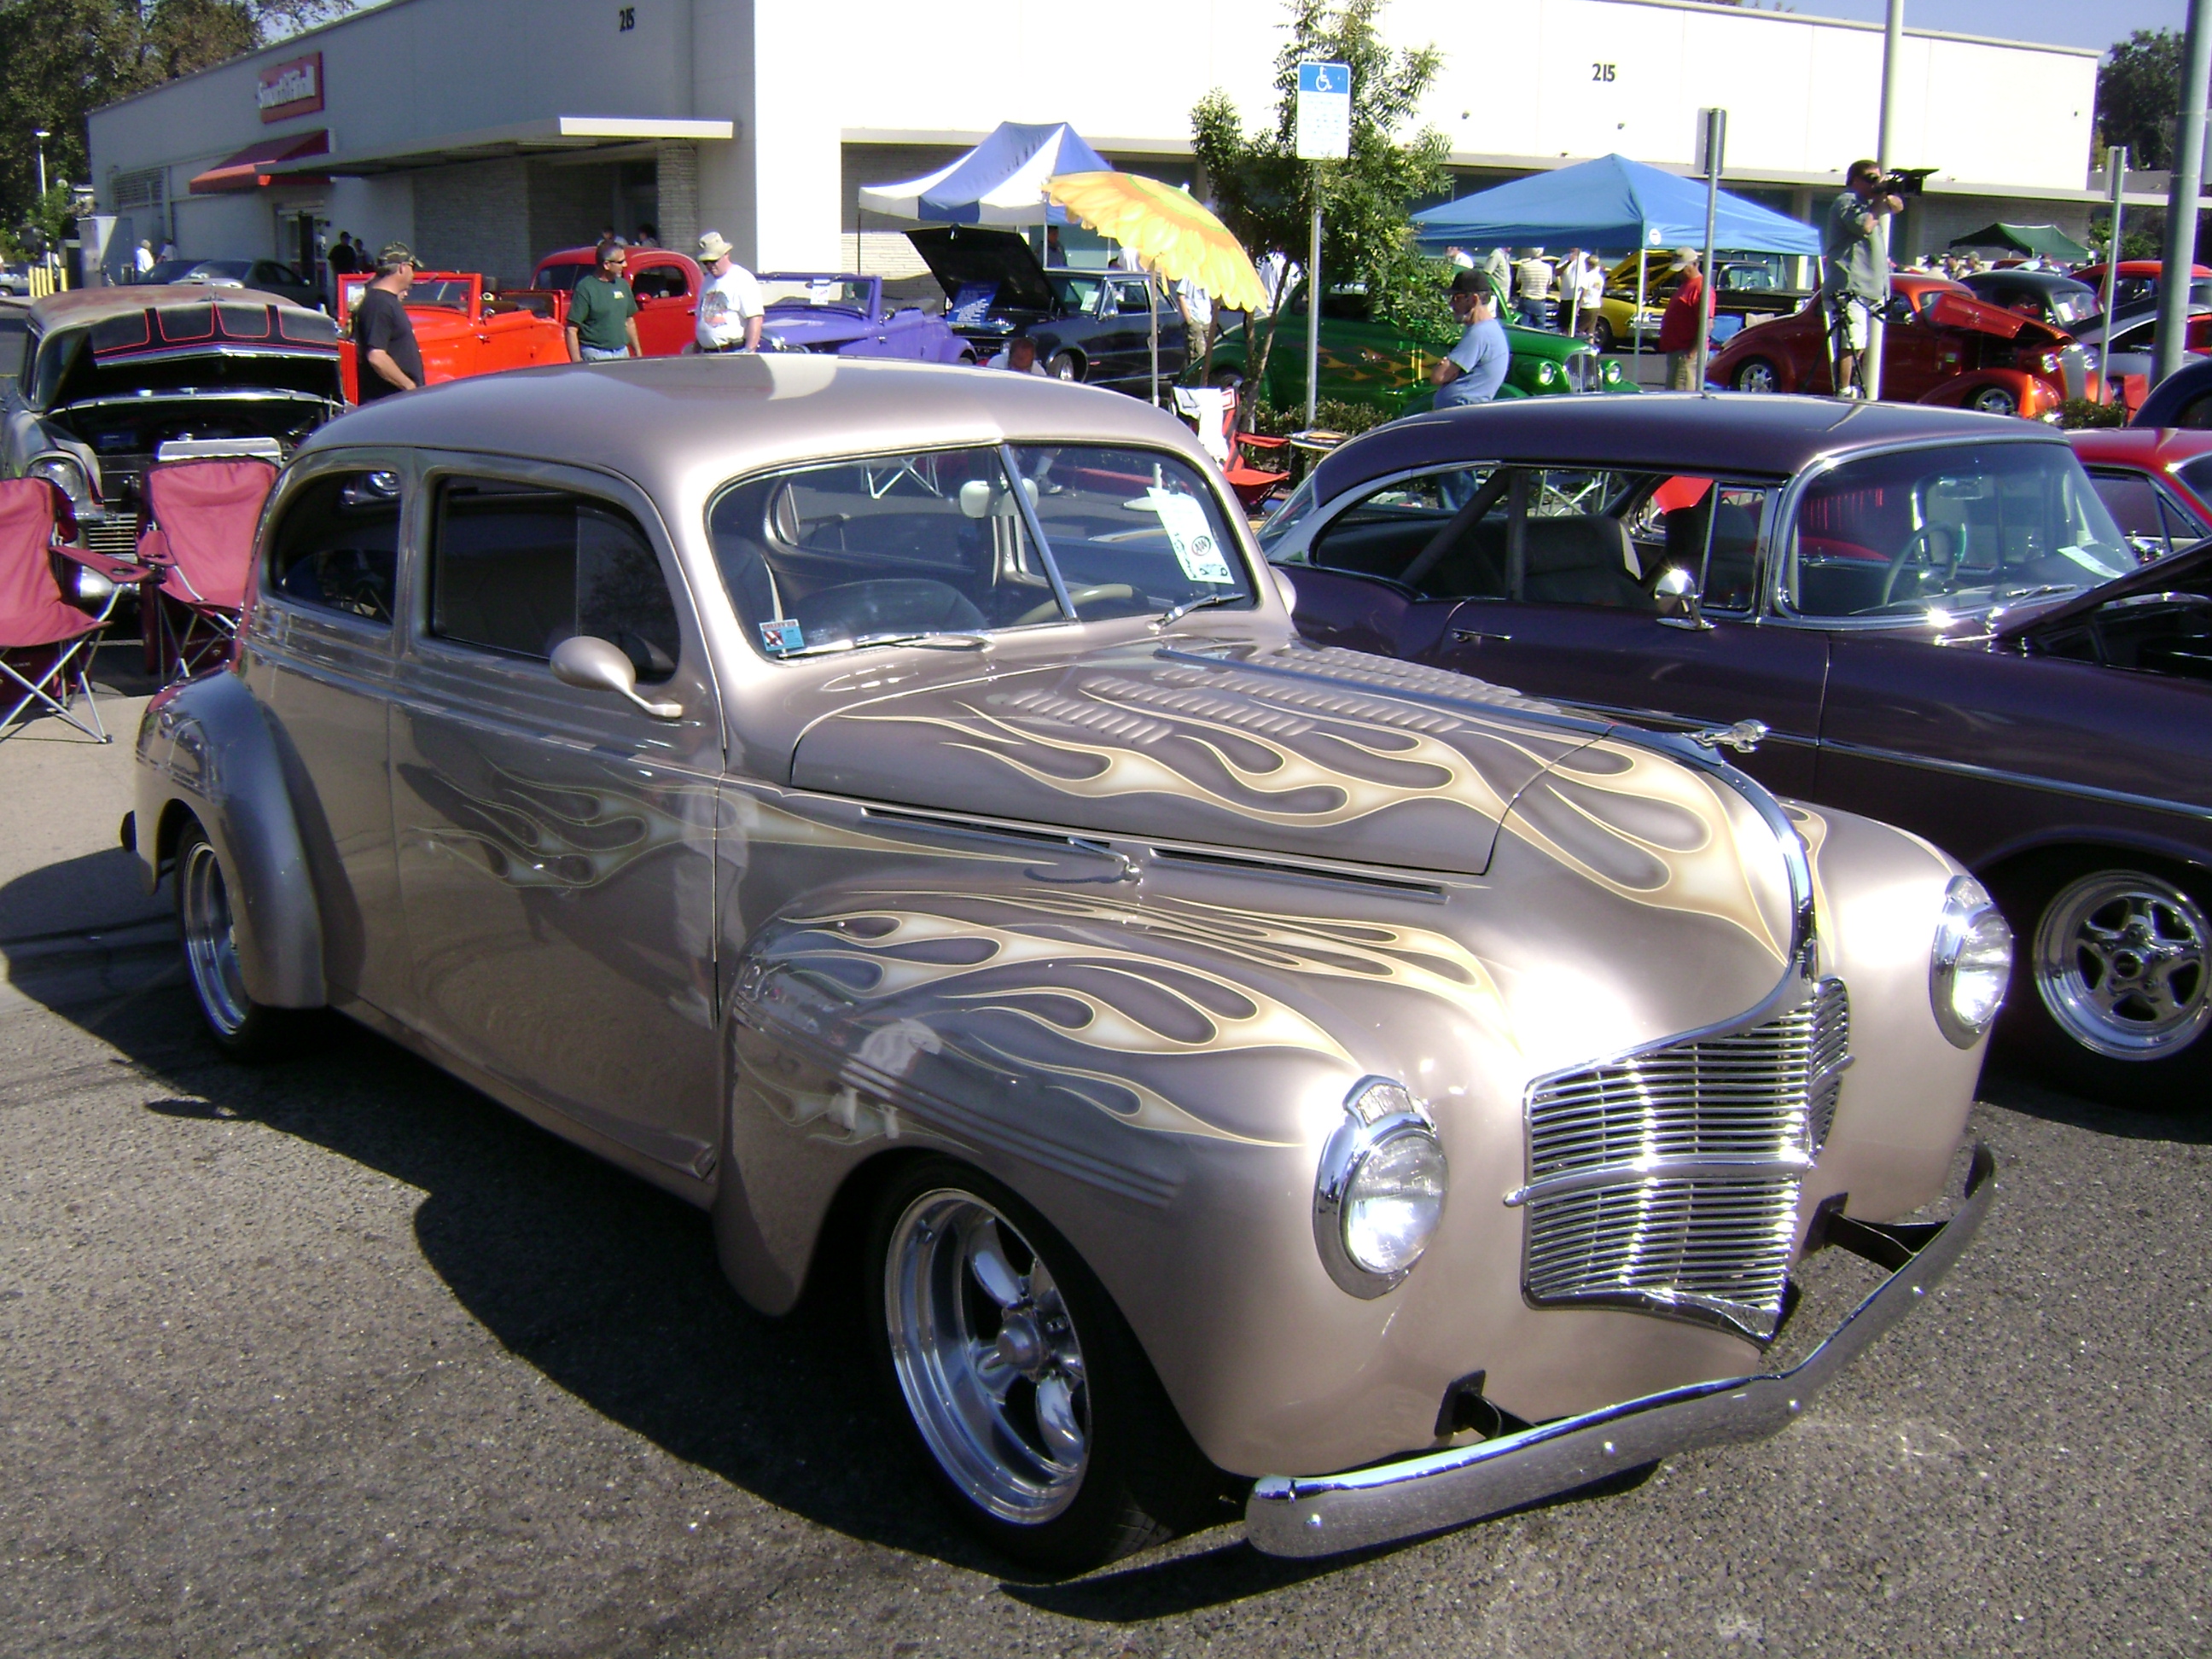 A&W end of year Car Show Lodi,California 10-26-08 019 | Flickr ...